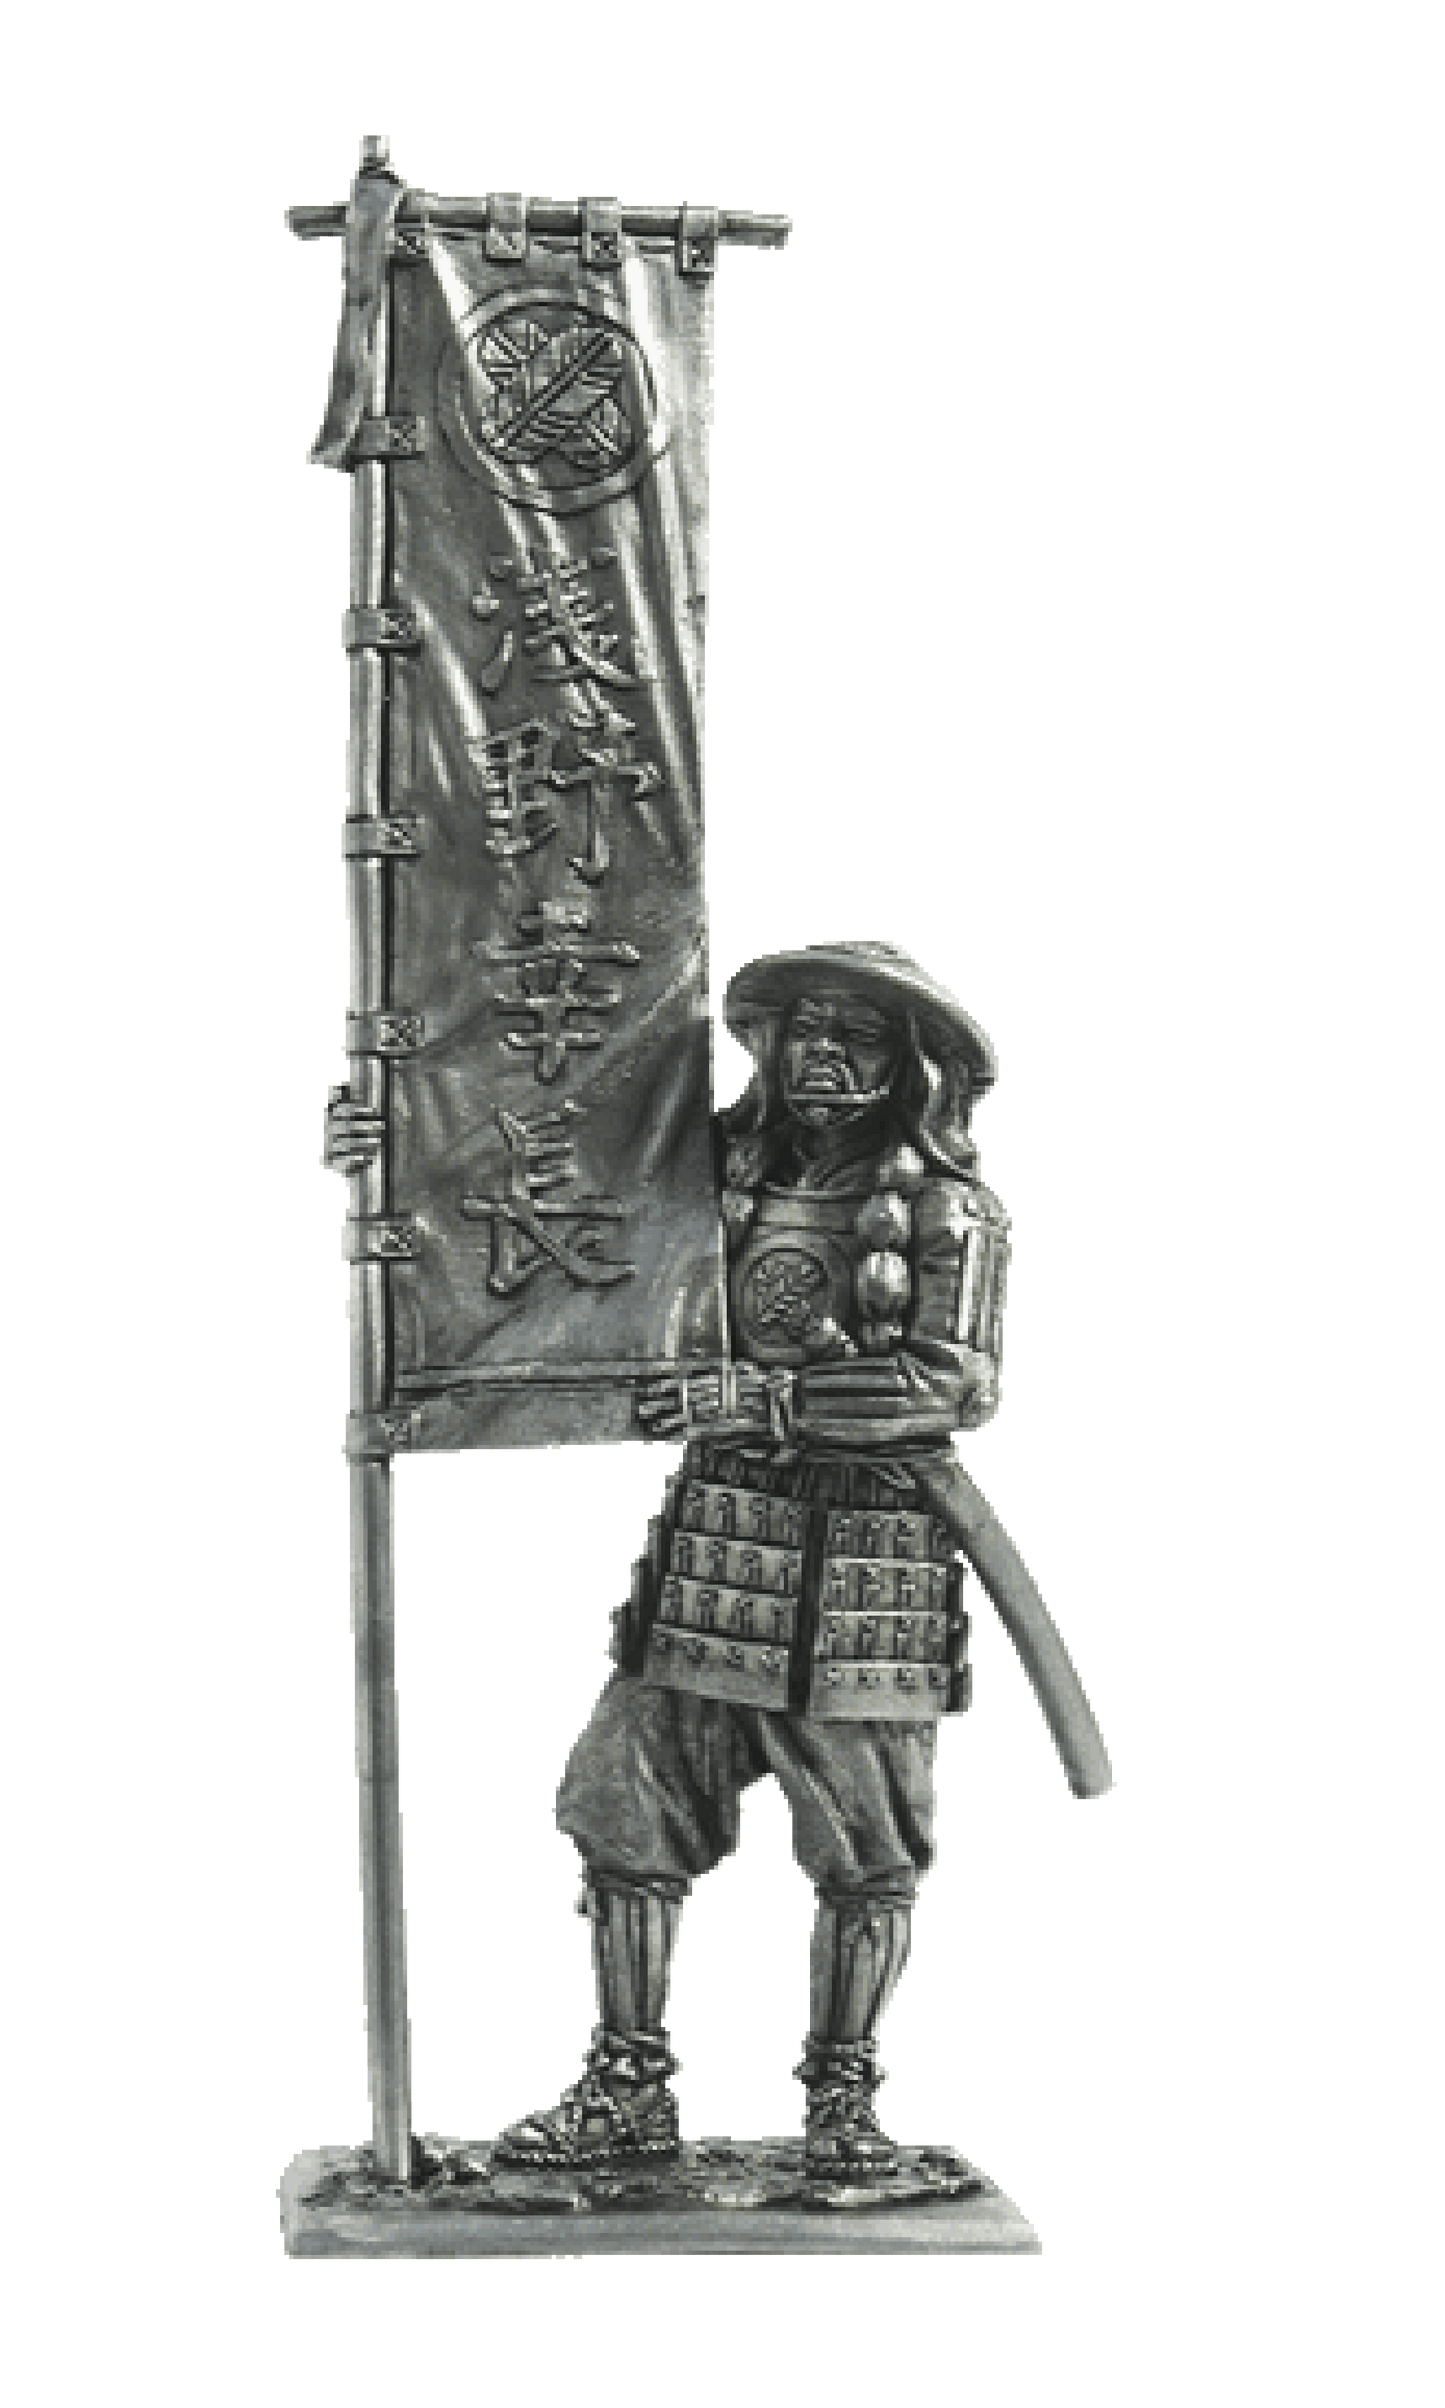 EK-M181 - асигару-знаменосец, 1600 год